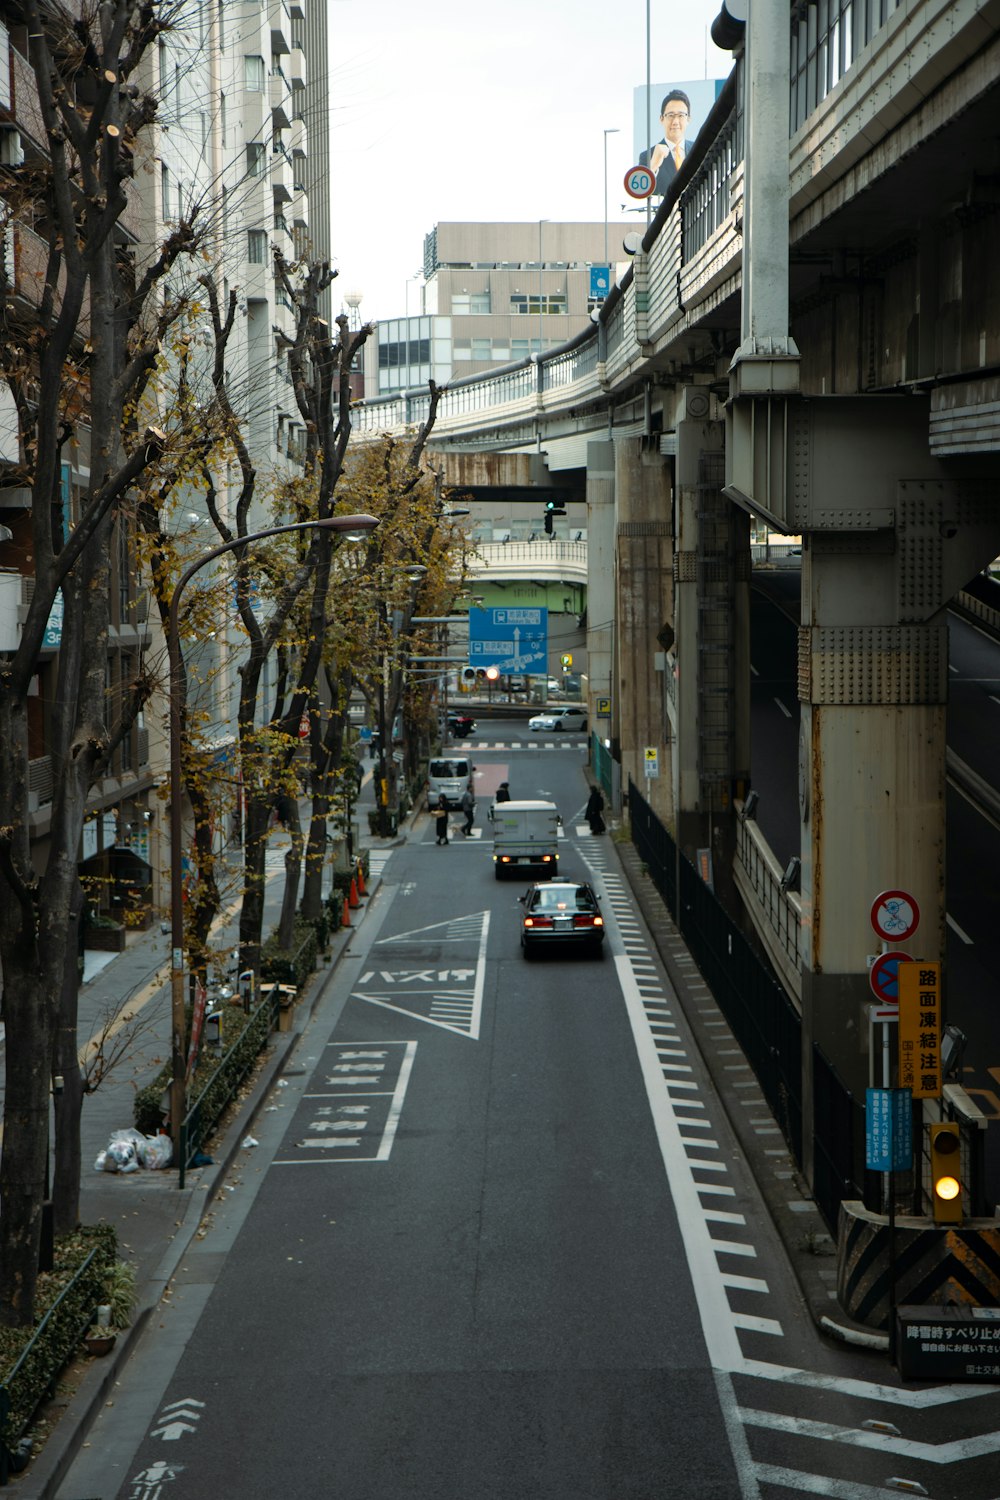 Un coche circulando por una calle junto a edificios altos